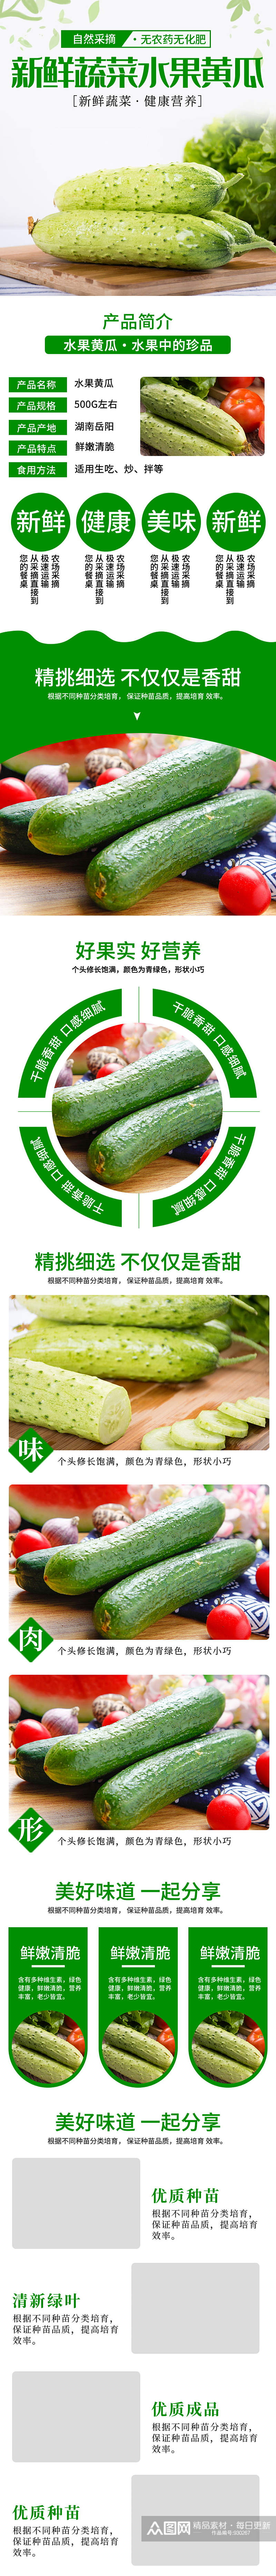 淘宝绿黄瓜有机蔬菜详情页模板素材